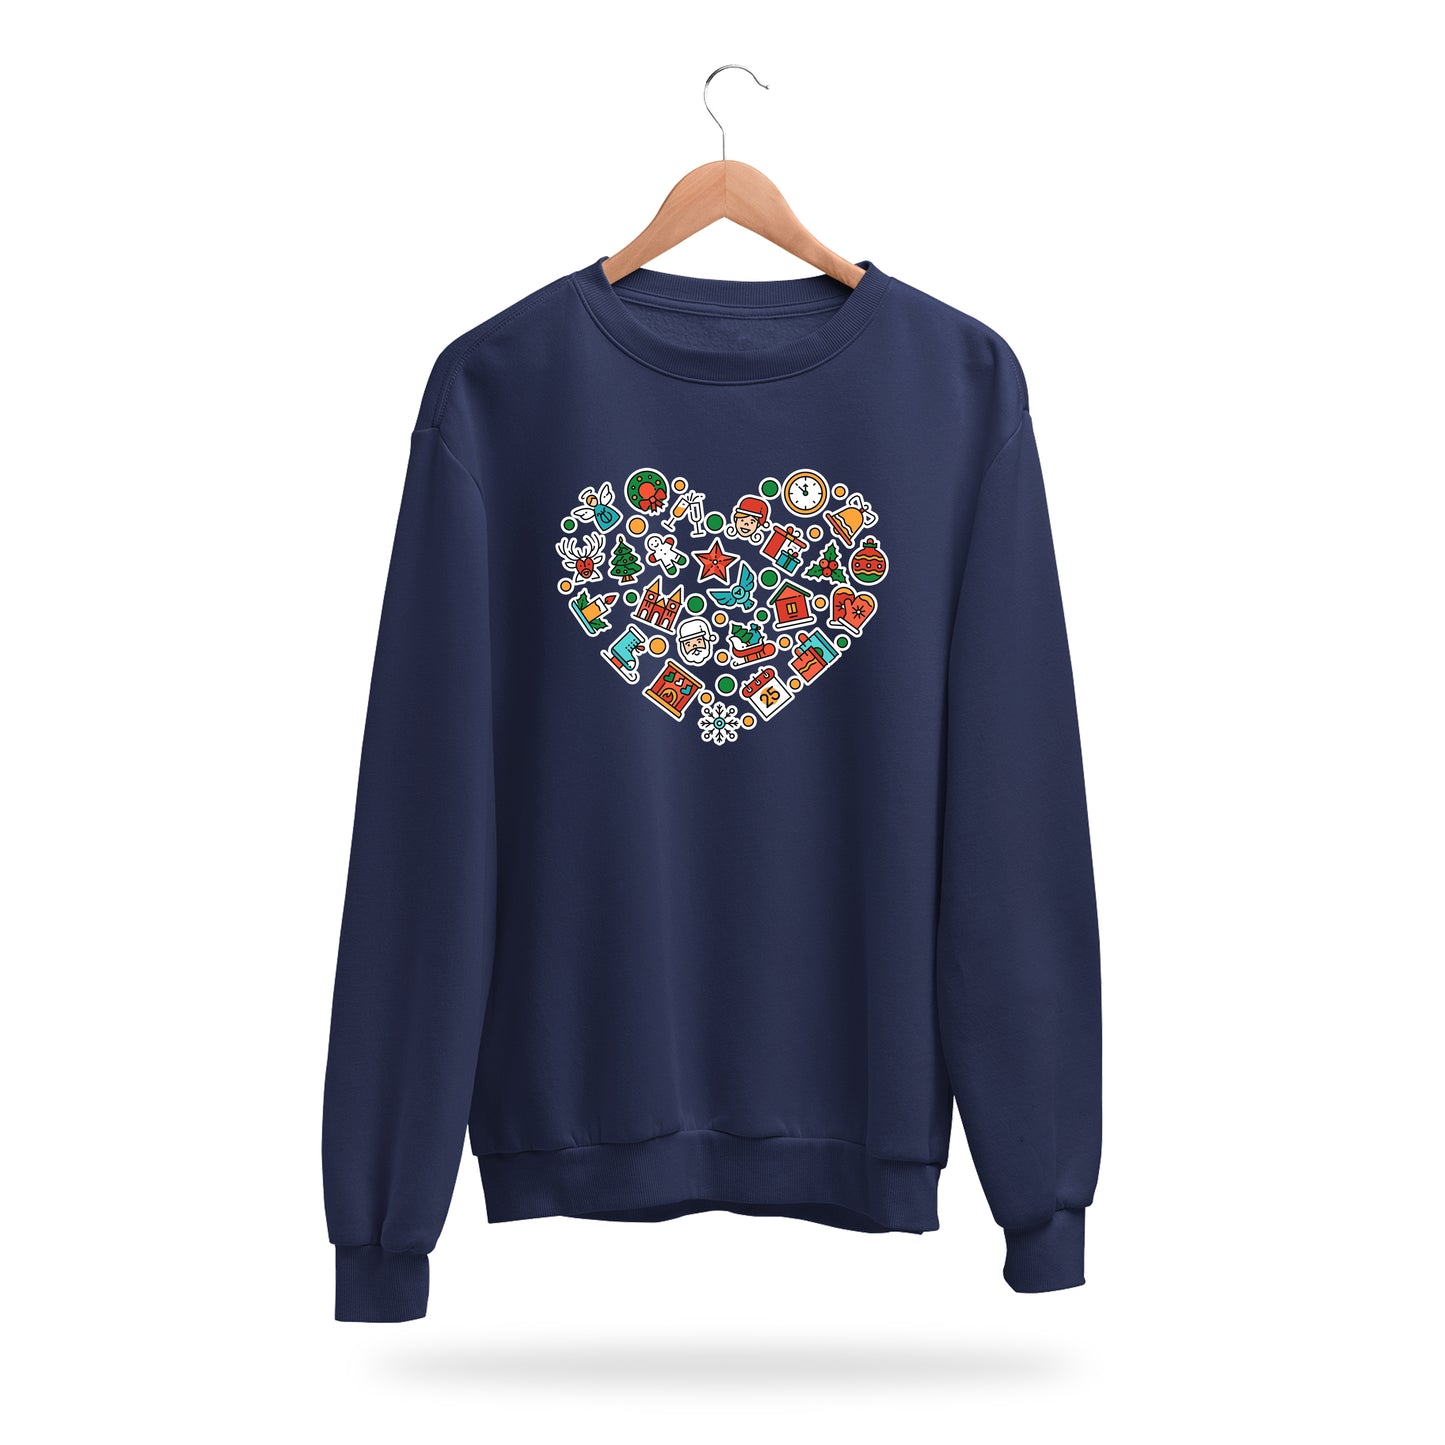 Sweatshirt - Christmas Heart